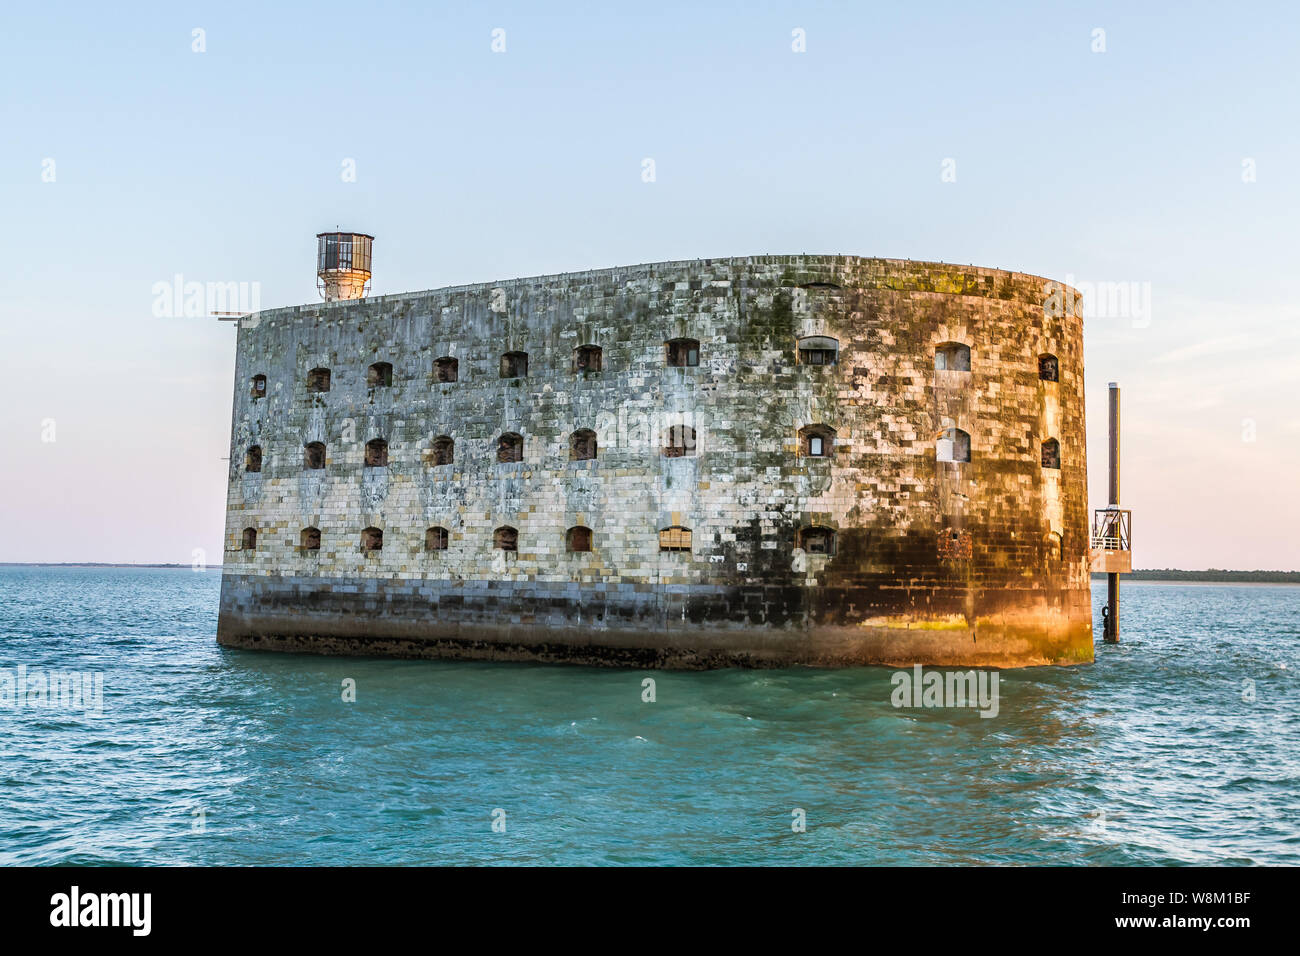 Le Fort Boyard est une fortification située sur un haut fond formé d'un banc de sable à l'origine, appelé la " longe de boyard " qui se découvre à mar Banque D'Images